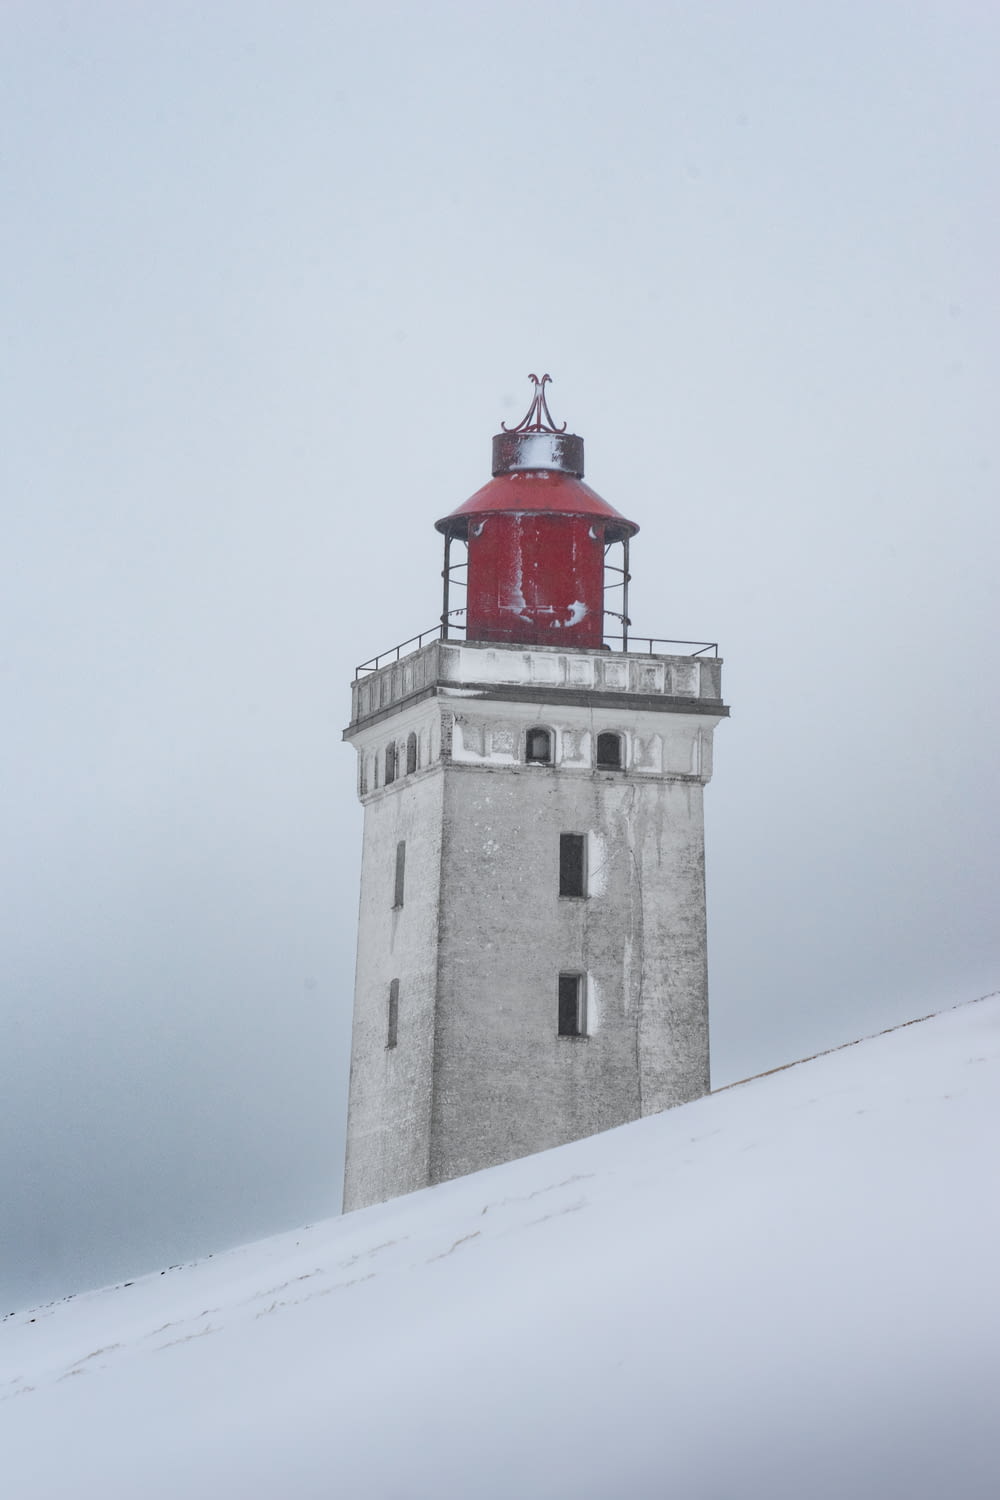 a lighthouse on a snowy hill